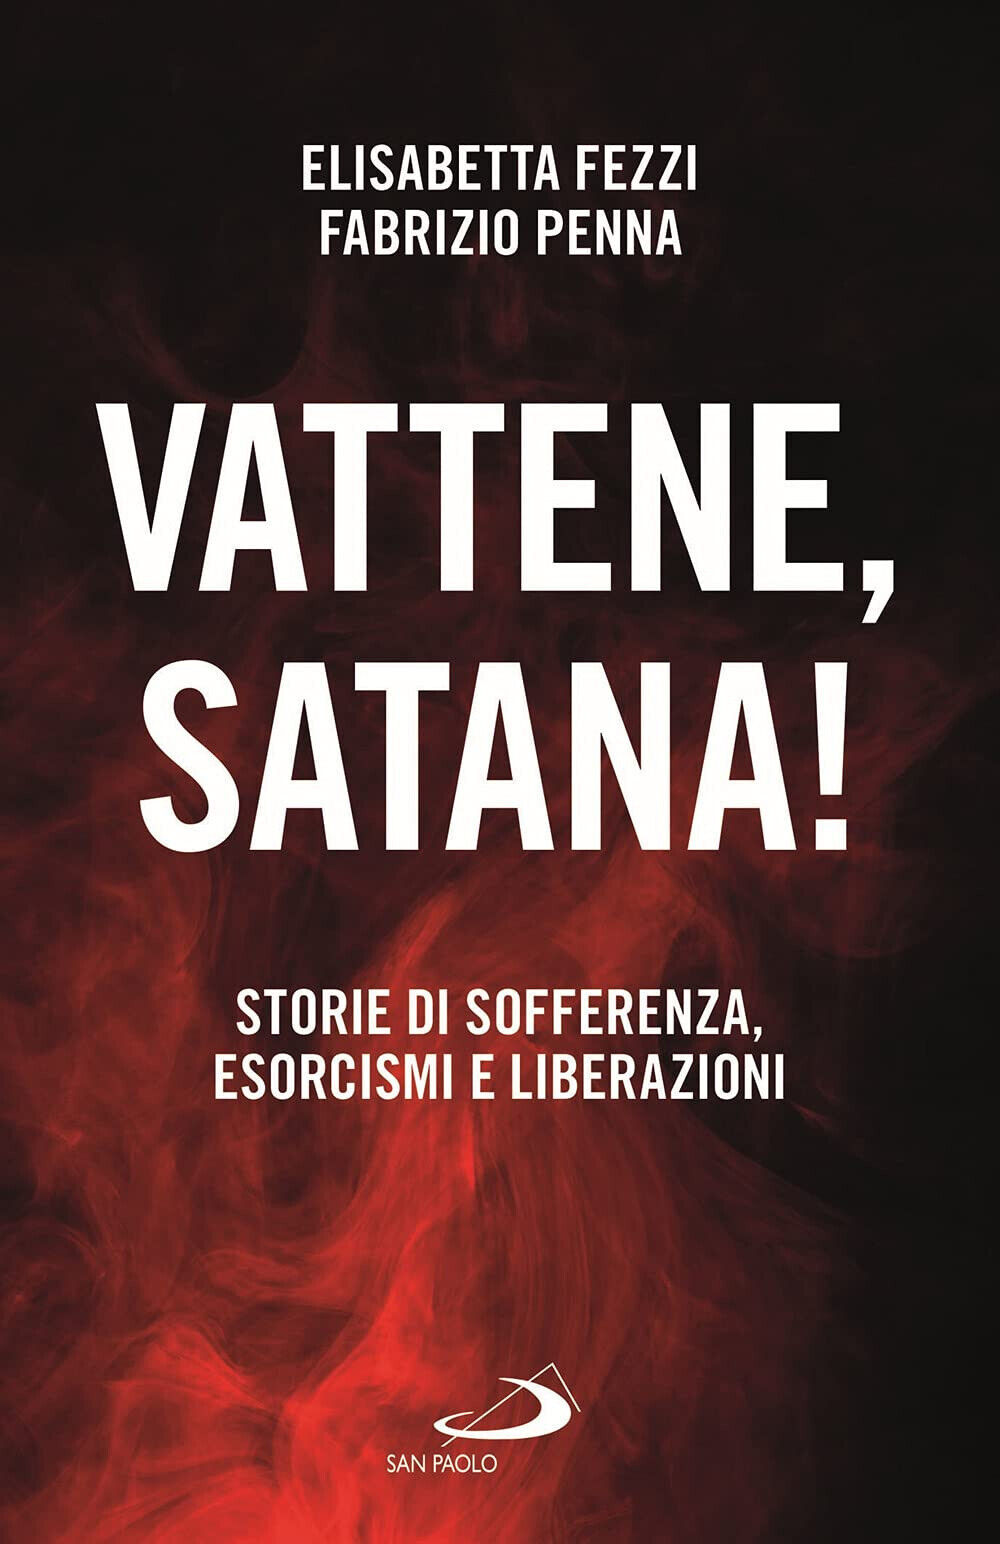 Vattene, satana! Storie di sofferenza, esorcismi e liberazioni - San Paolo, 2021 libro usato